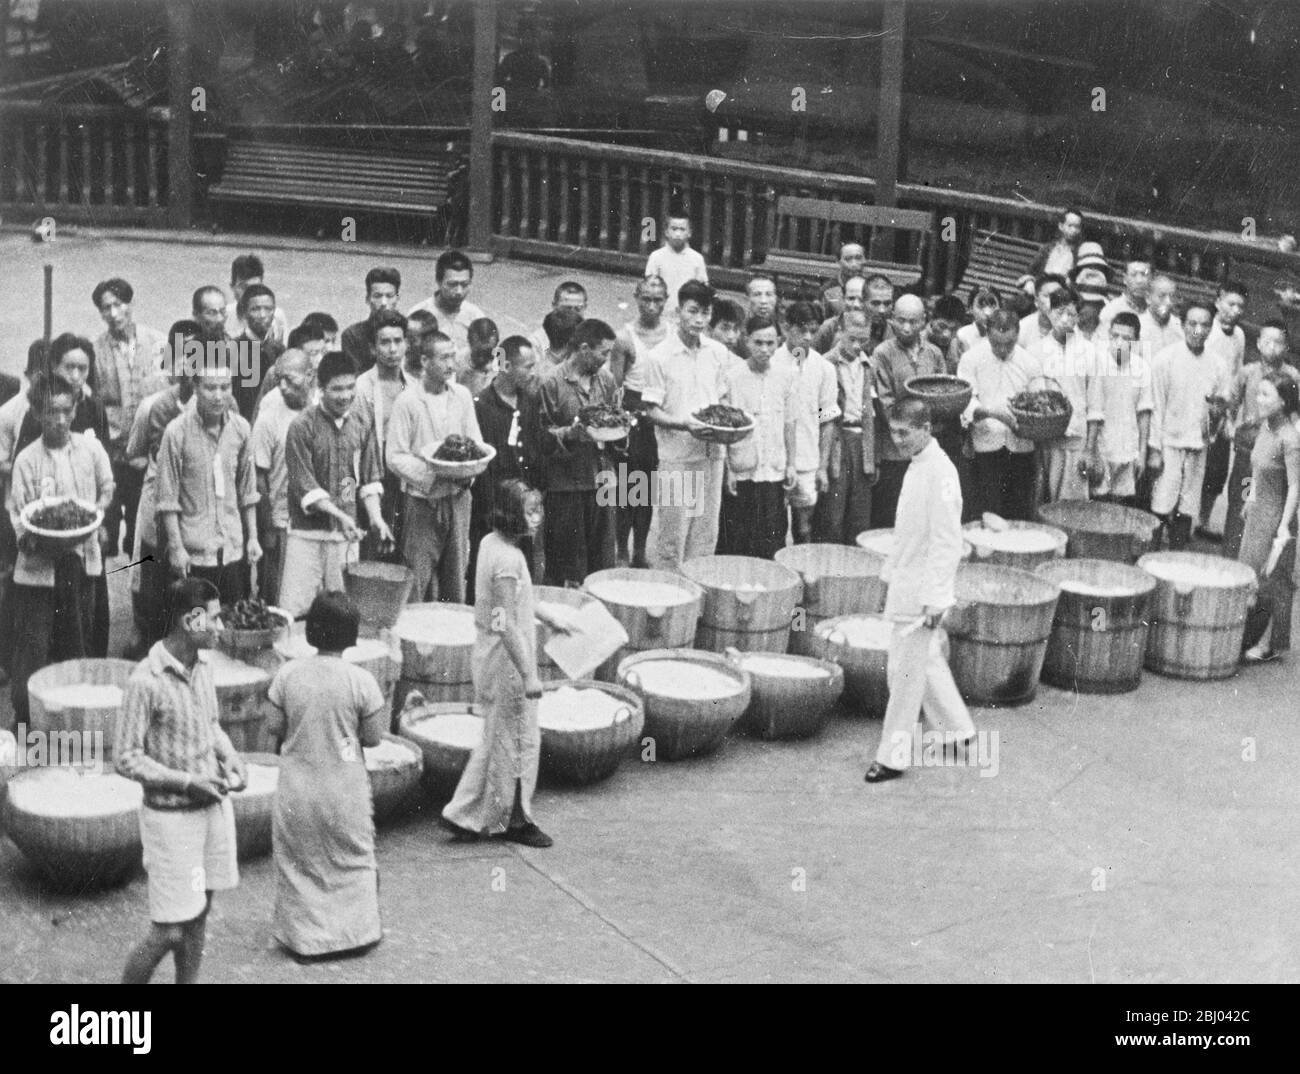 Nahrung für Kriegsopfer. - eine Reihe von großen Schalen mit Lebensmitteln gefüllt, die die Augen der hungrigen chinesischen Flüchtlinge erfreut, die ihre Rationen in Shanghai erwartet. - 25. November 1937 Stockfoto